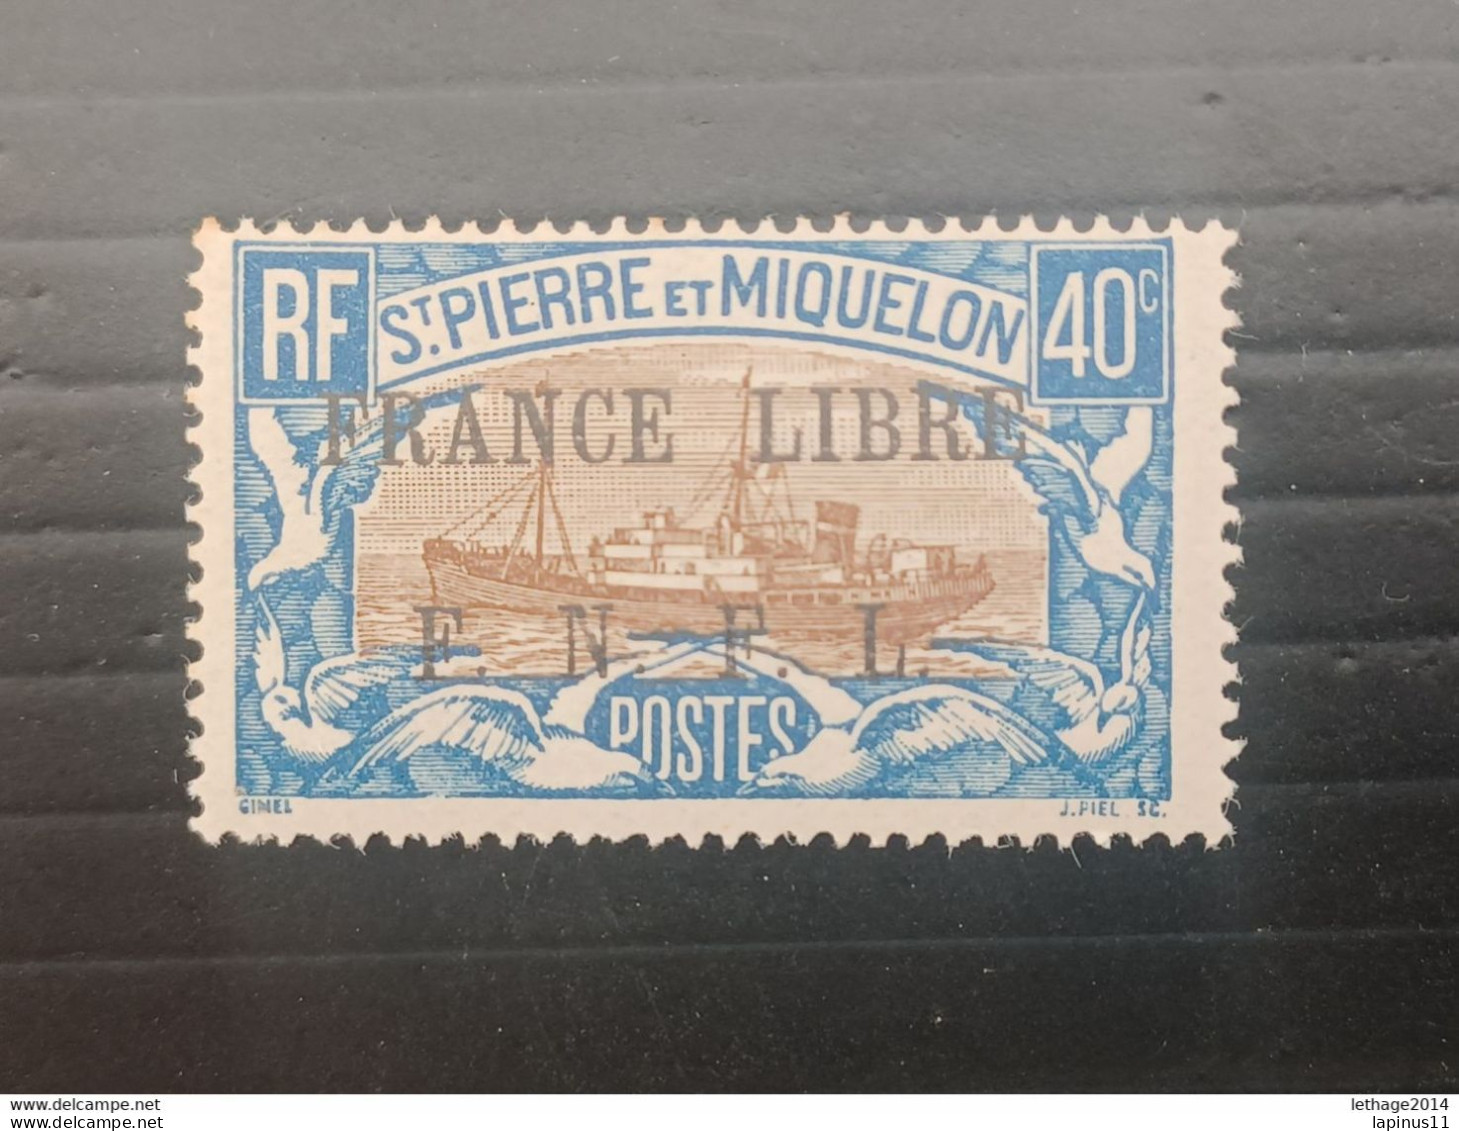 ST PIERRE ET MIQUELLON 1941 STAMPS OF 1922 OVERPRINT FRANCE LIBRE F N F L MNH - Ungebraucht